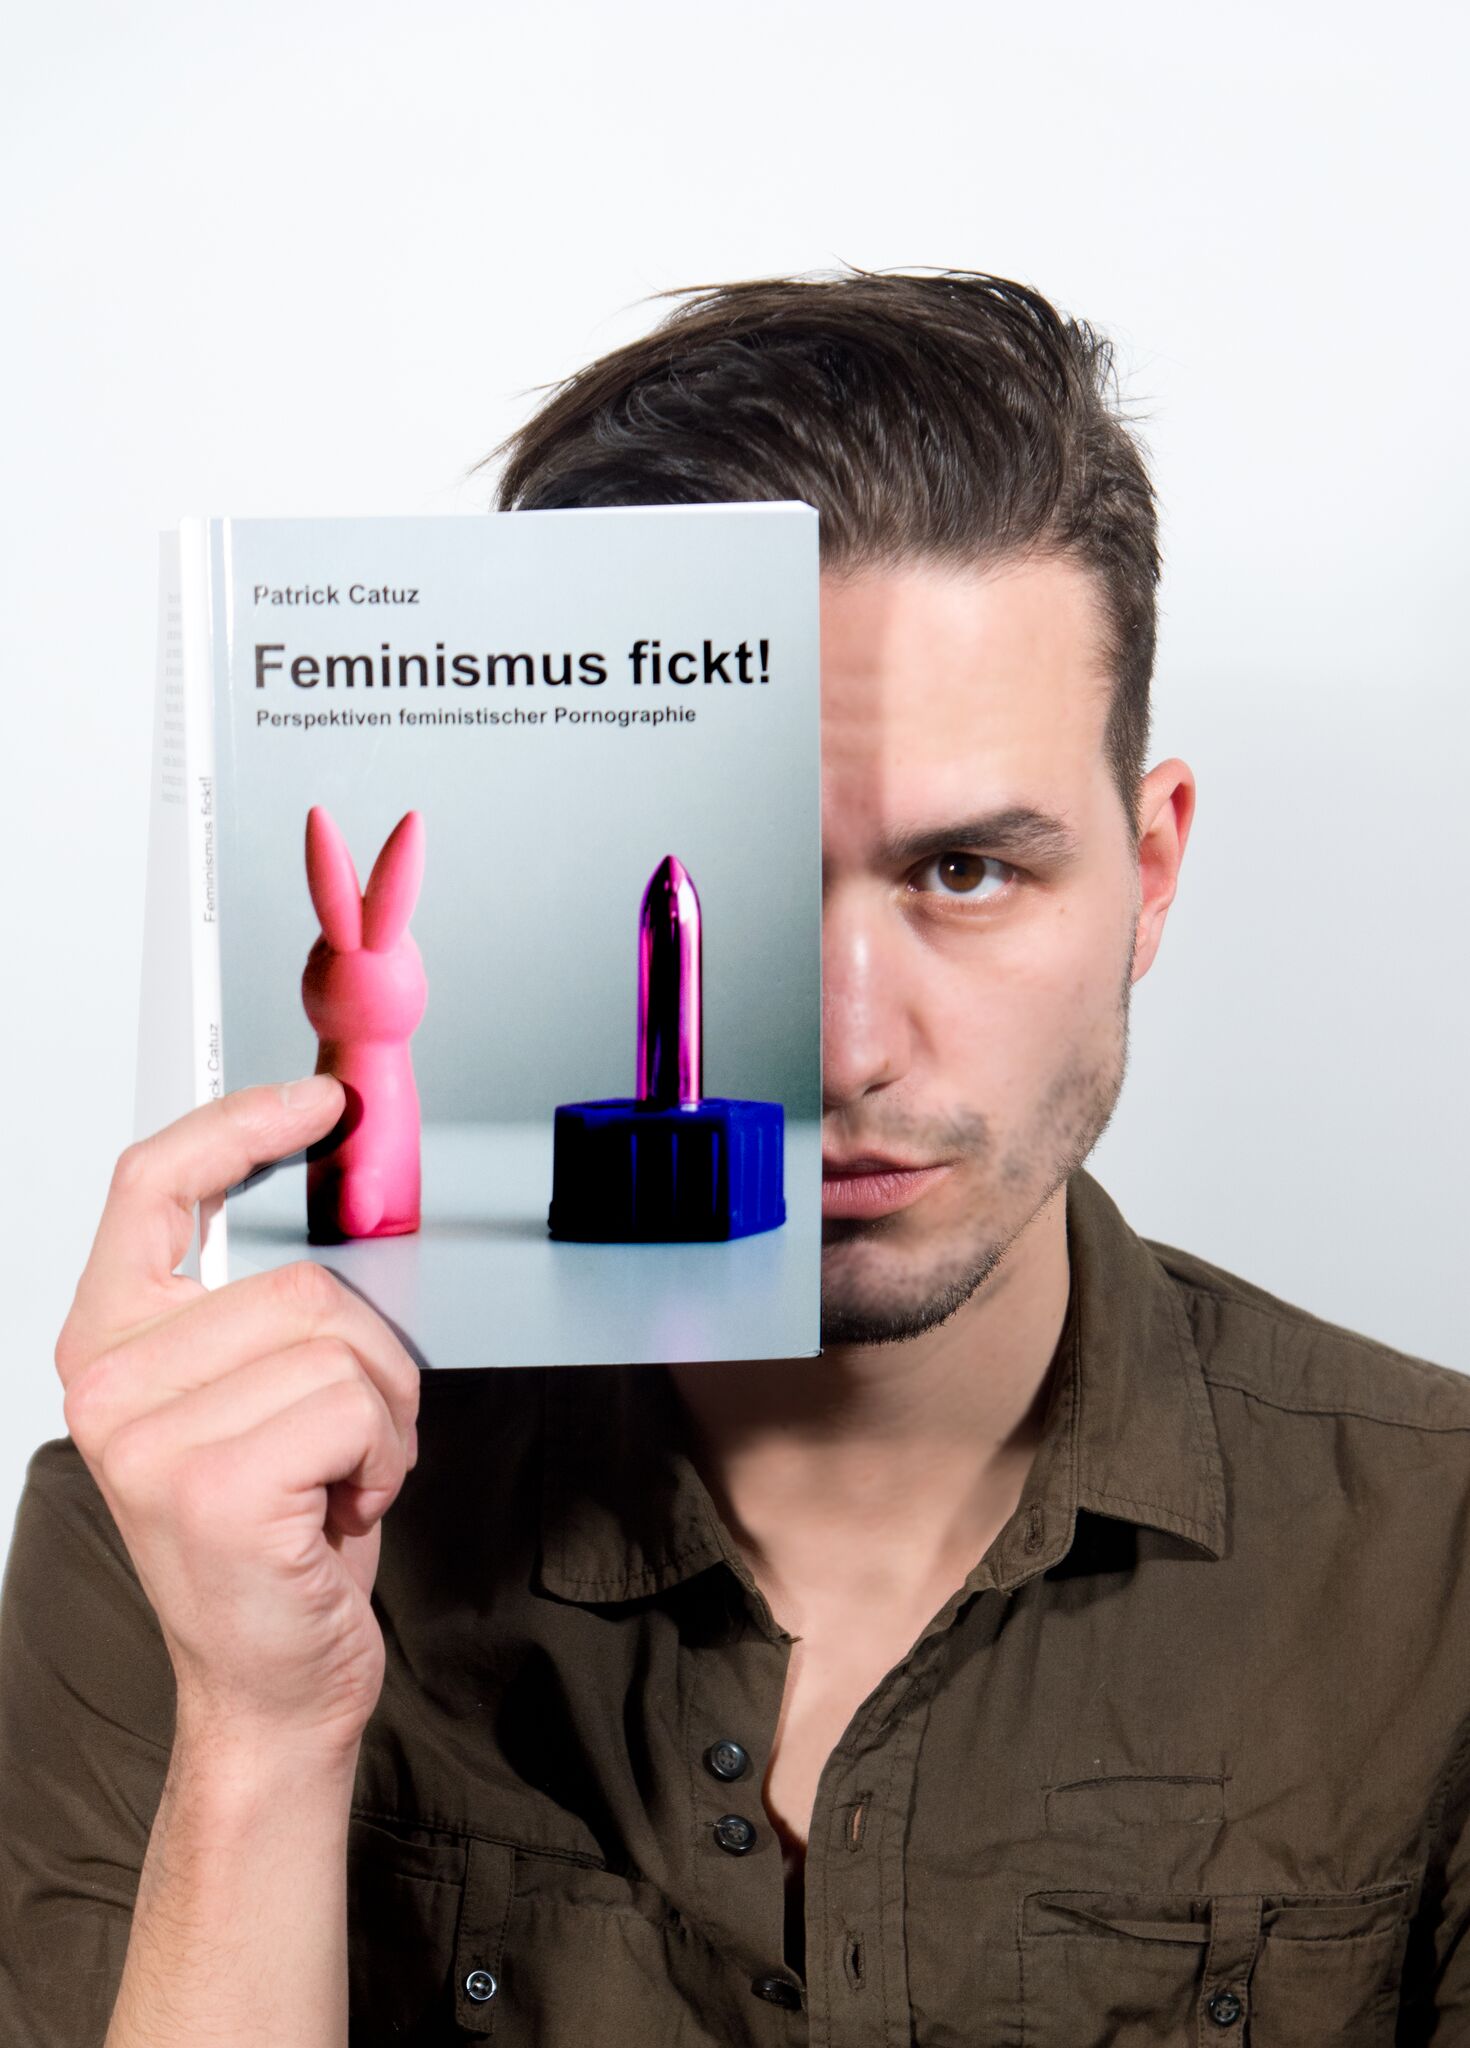 Patrick Catuz mit seinem Buch "Feminismus fickt!"